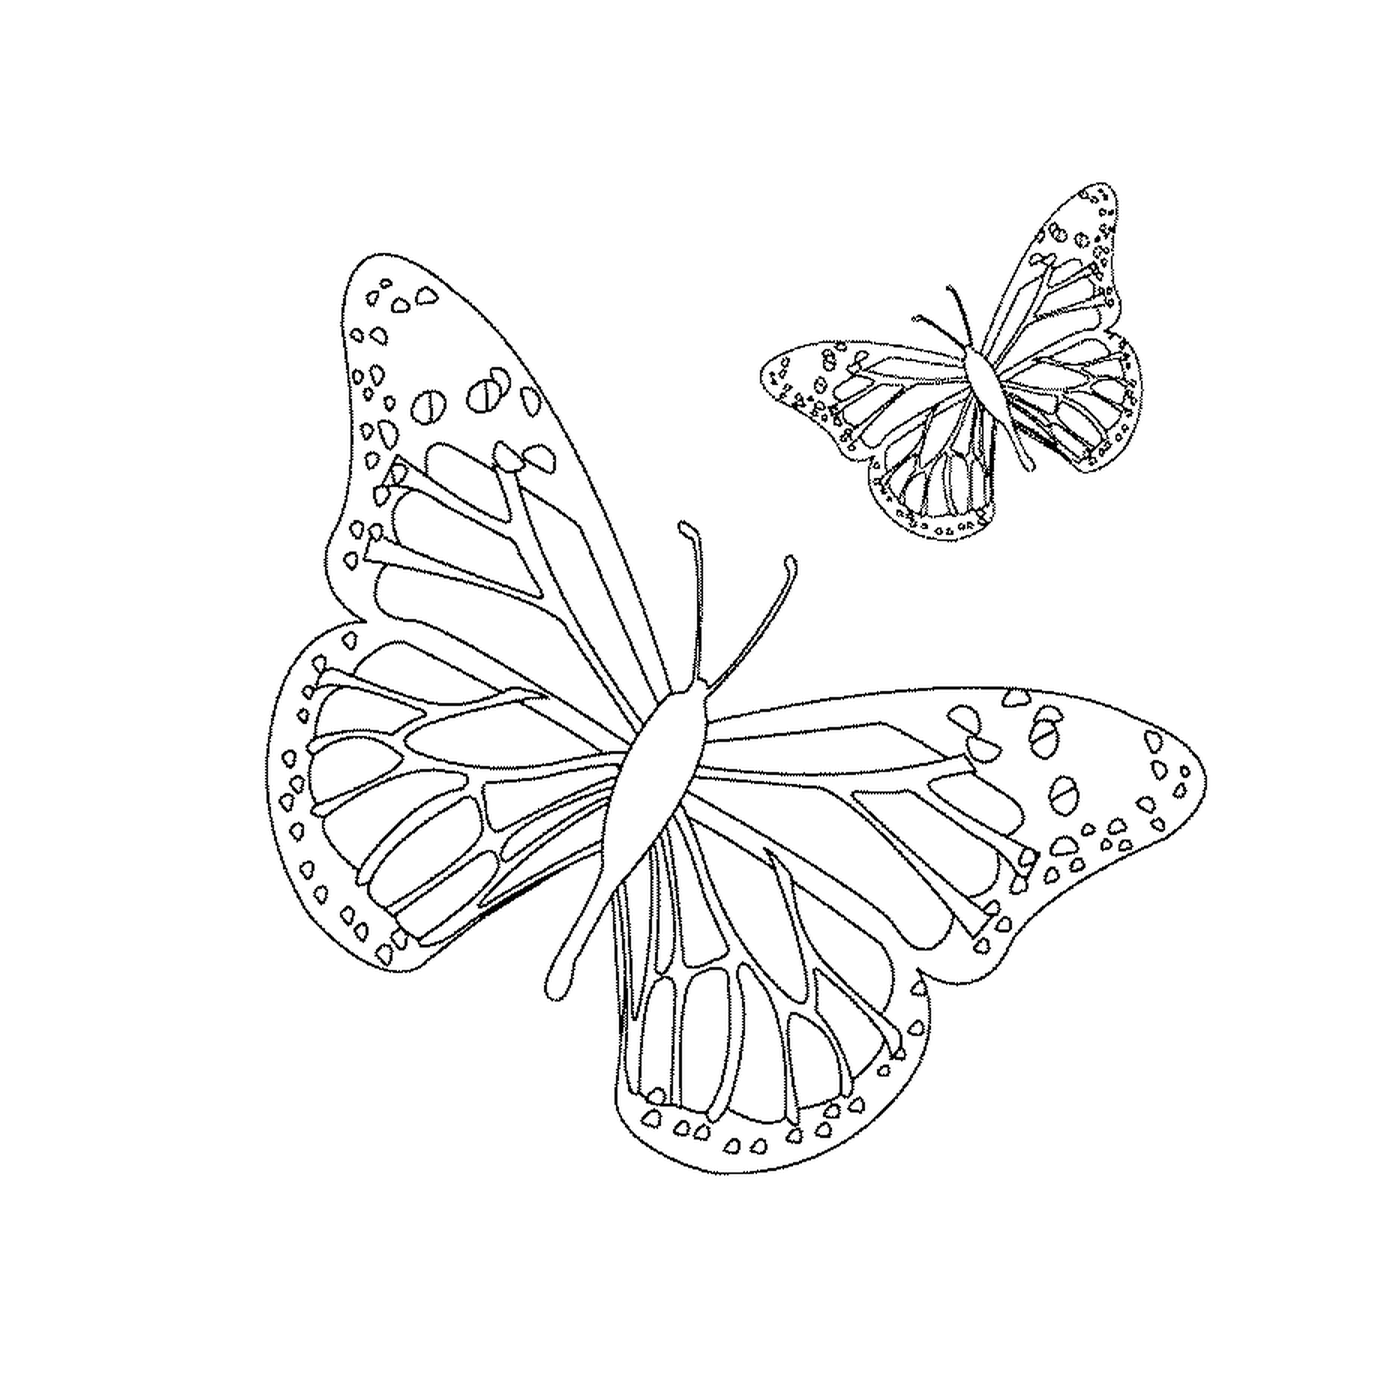  Dos mariposas vuelan con gracia 